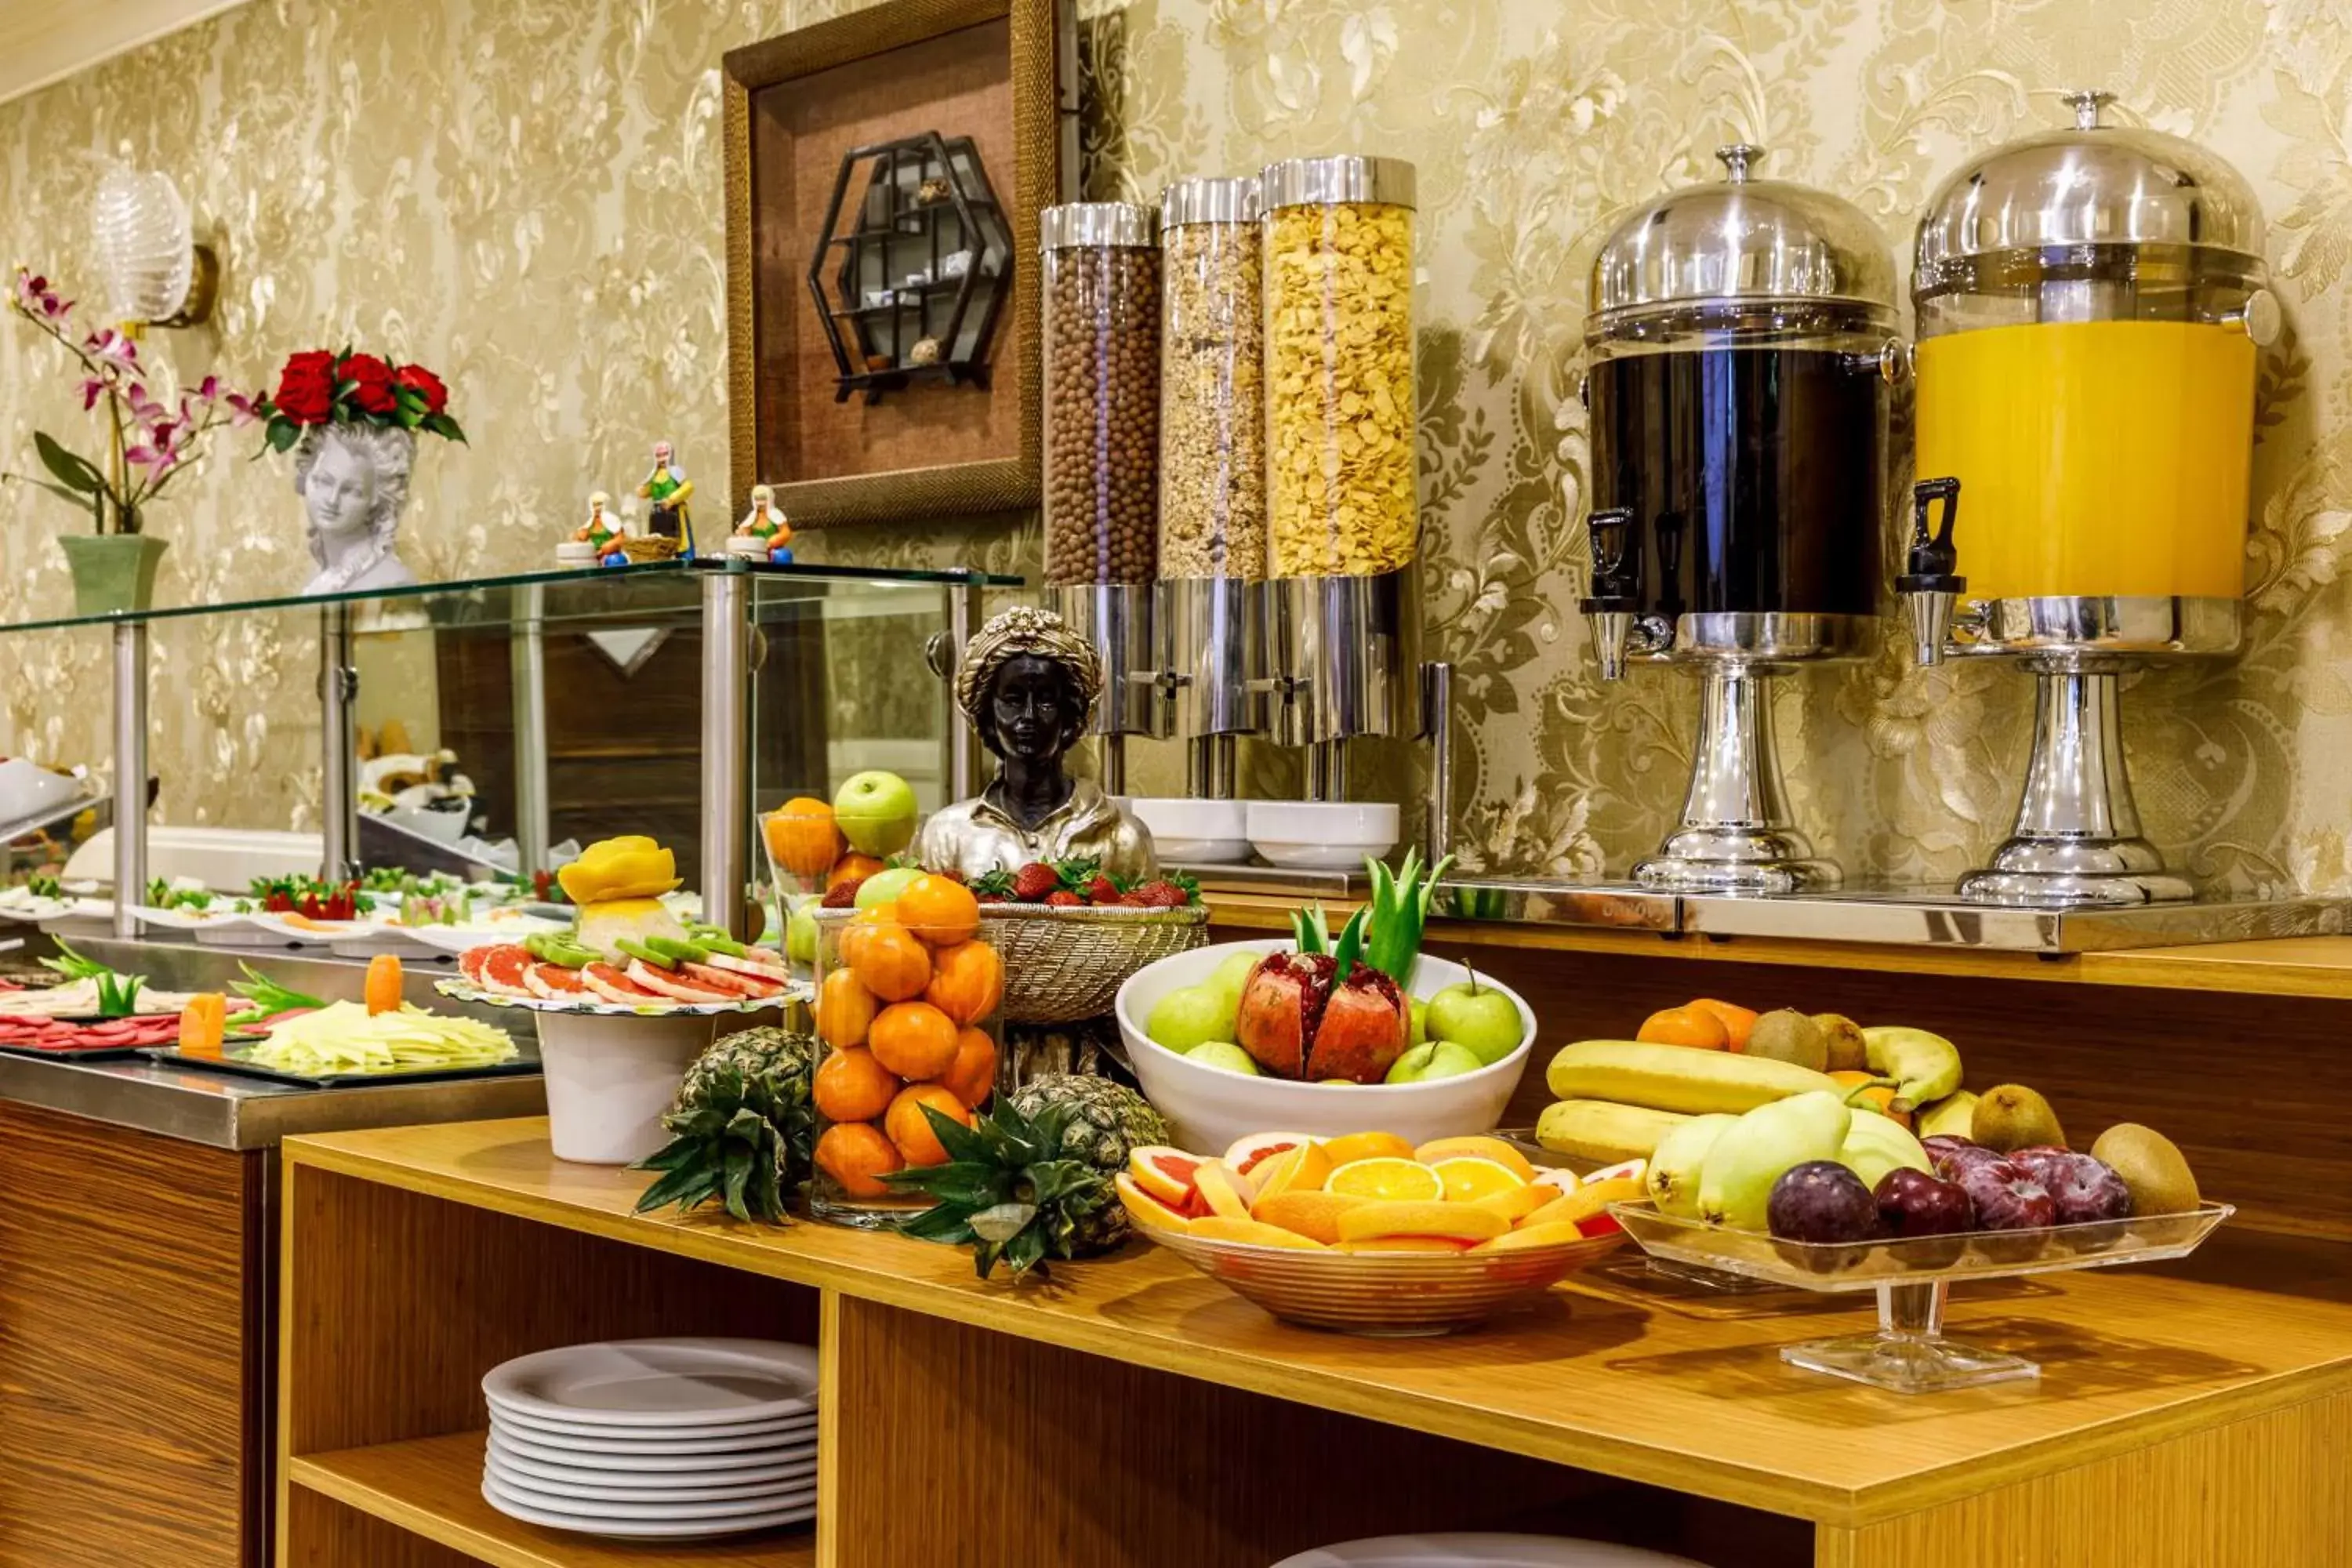 Buffet breakfast in Golden Crown Hotel